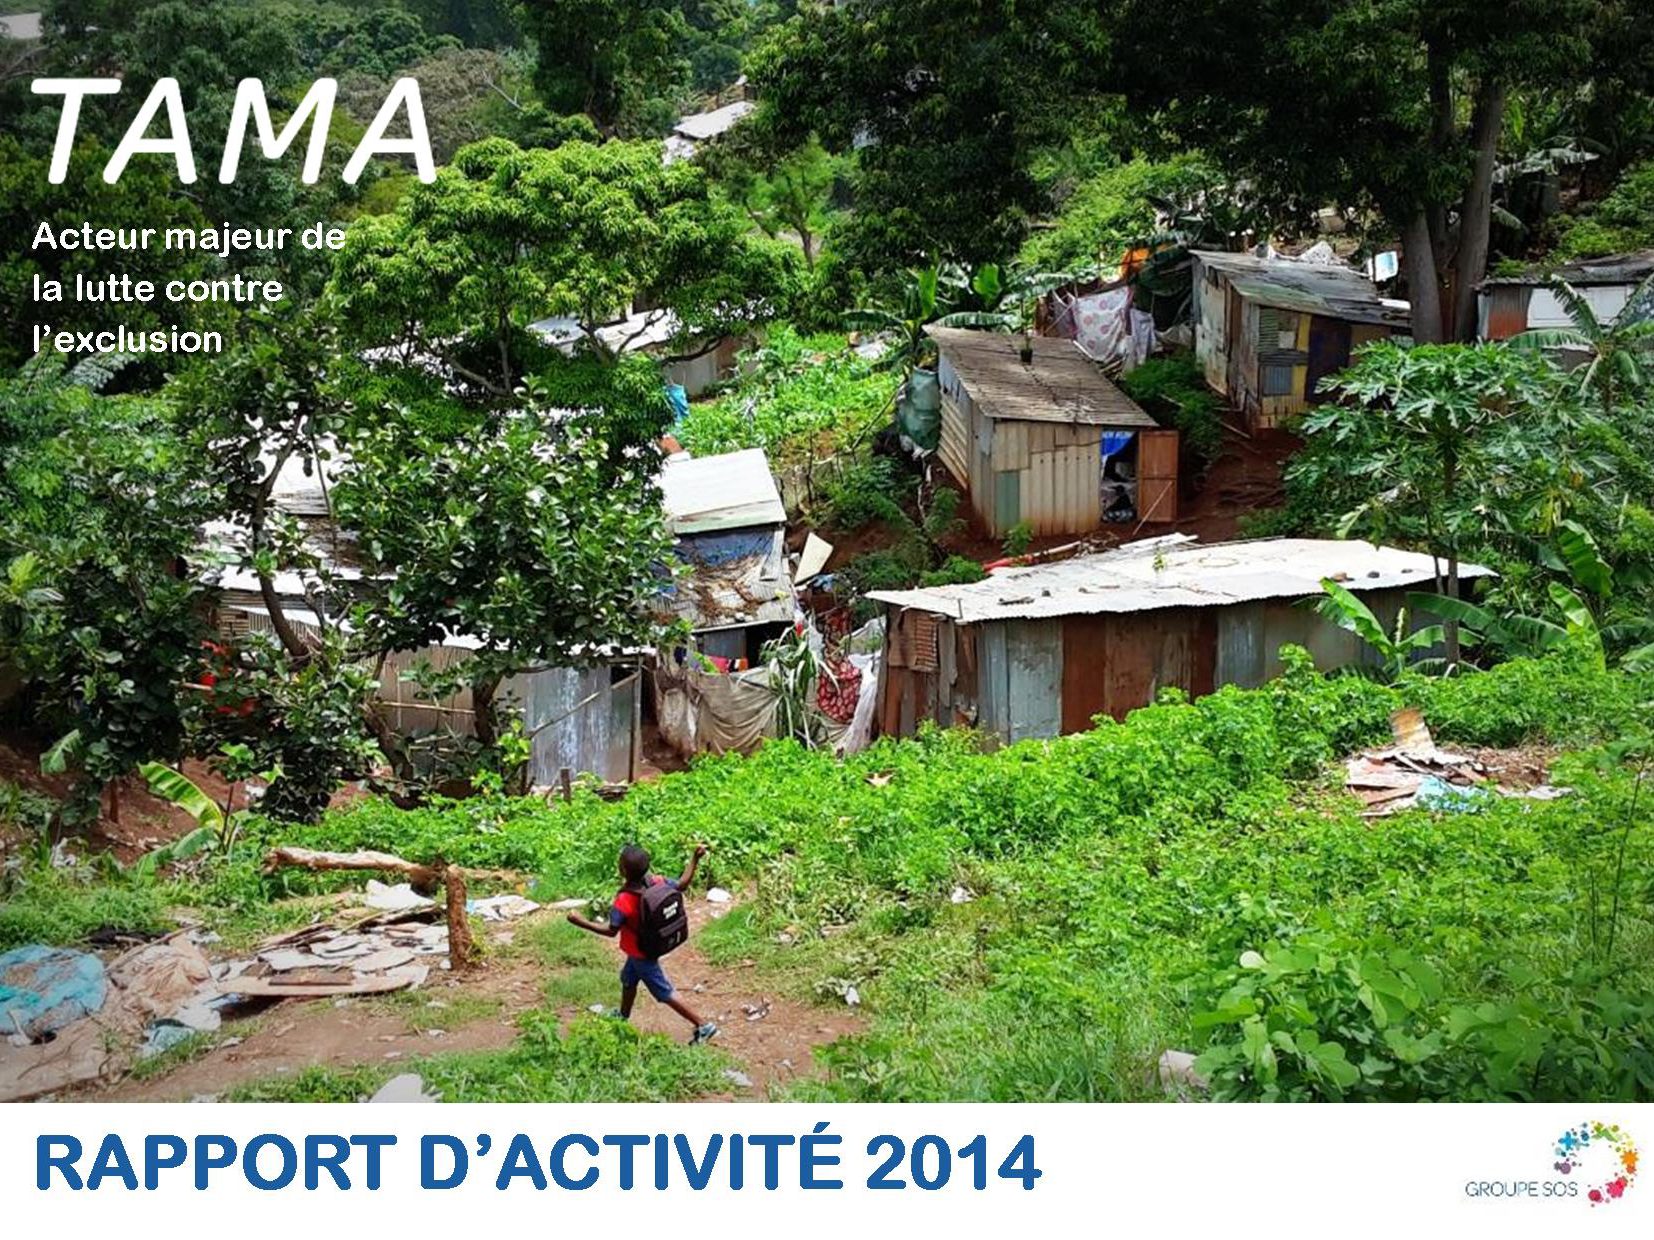 TAMA publie son rapport d’activité 2014